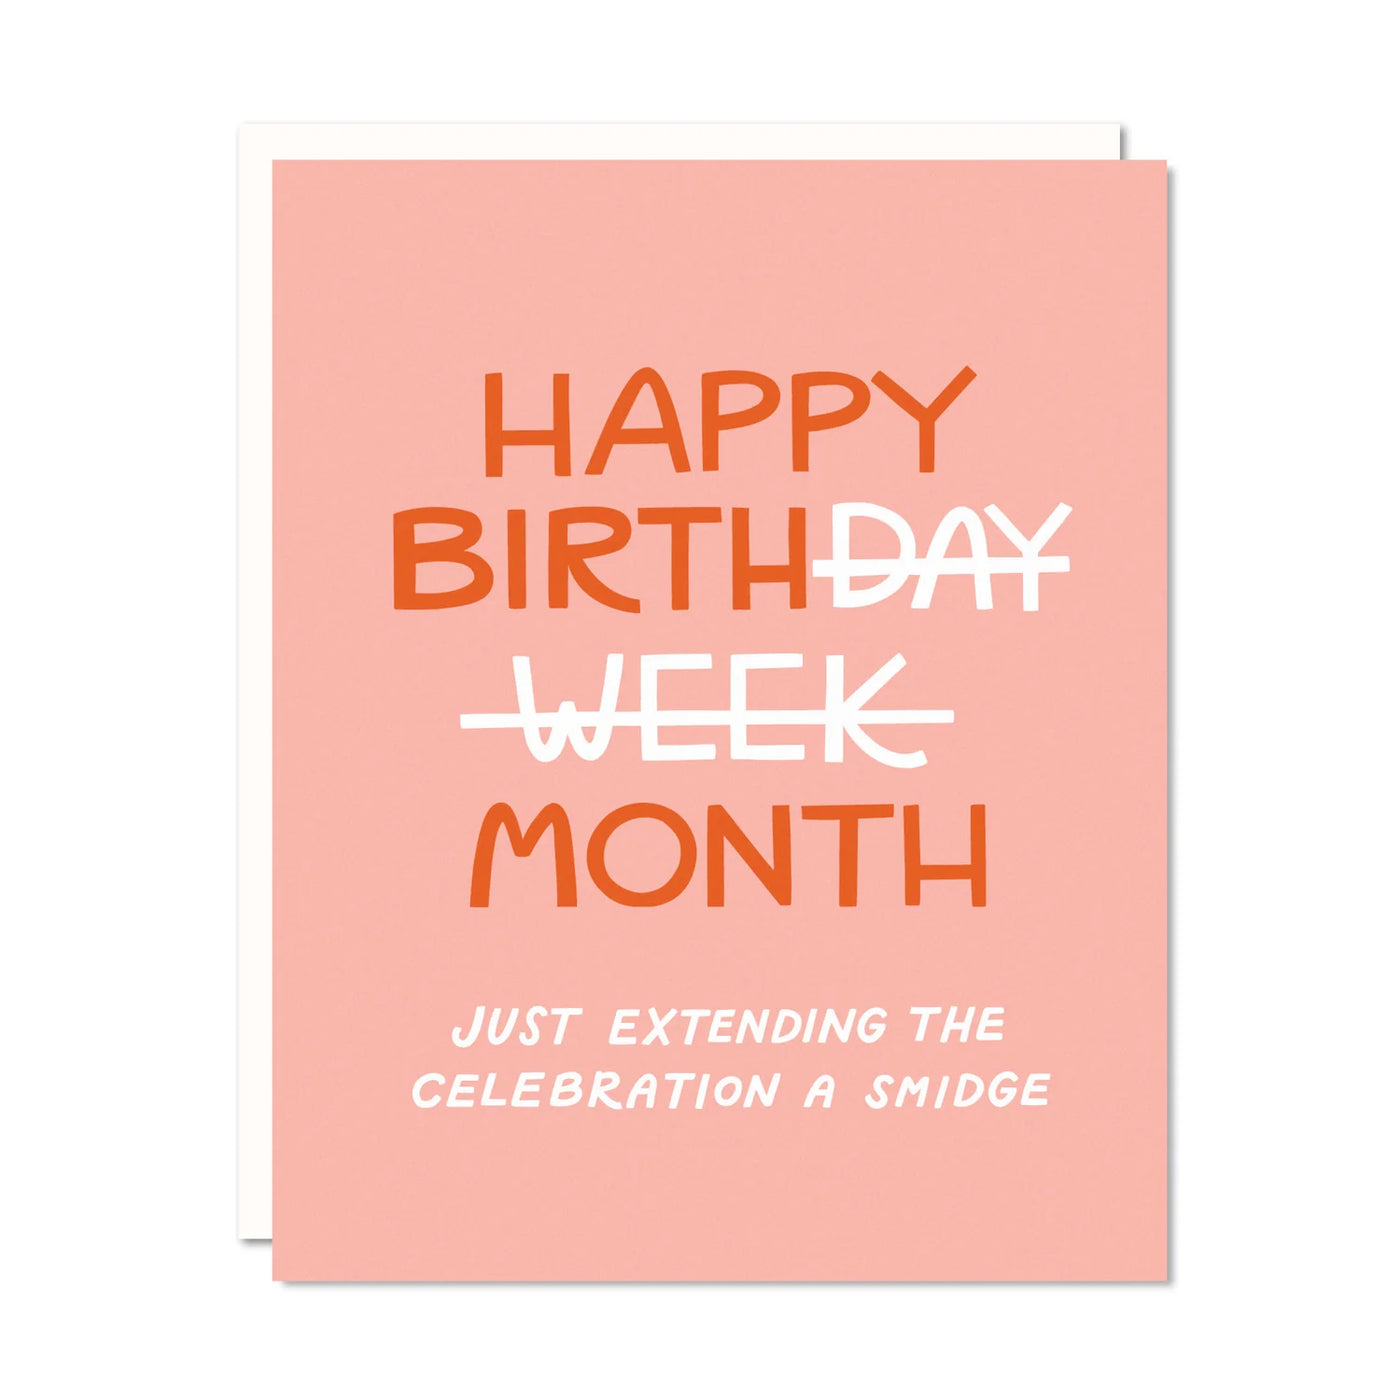 birth day week month card